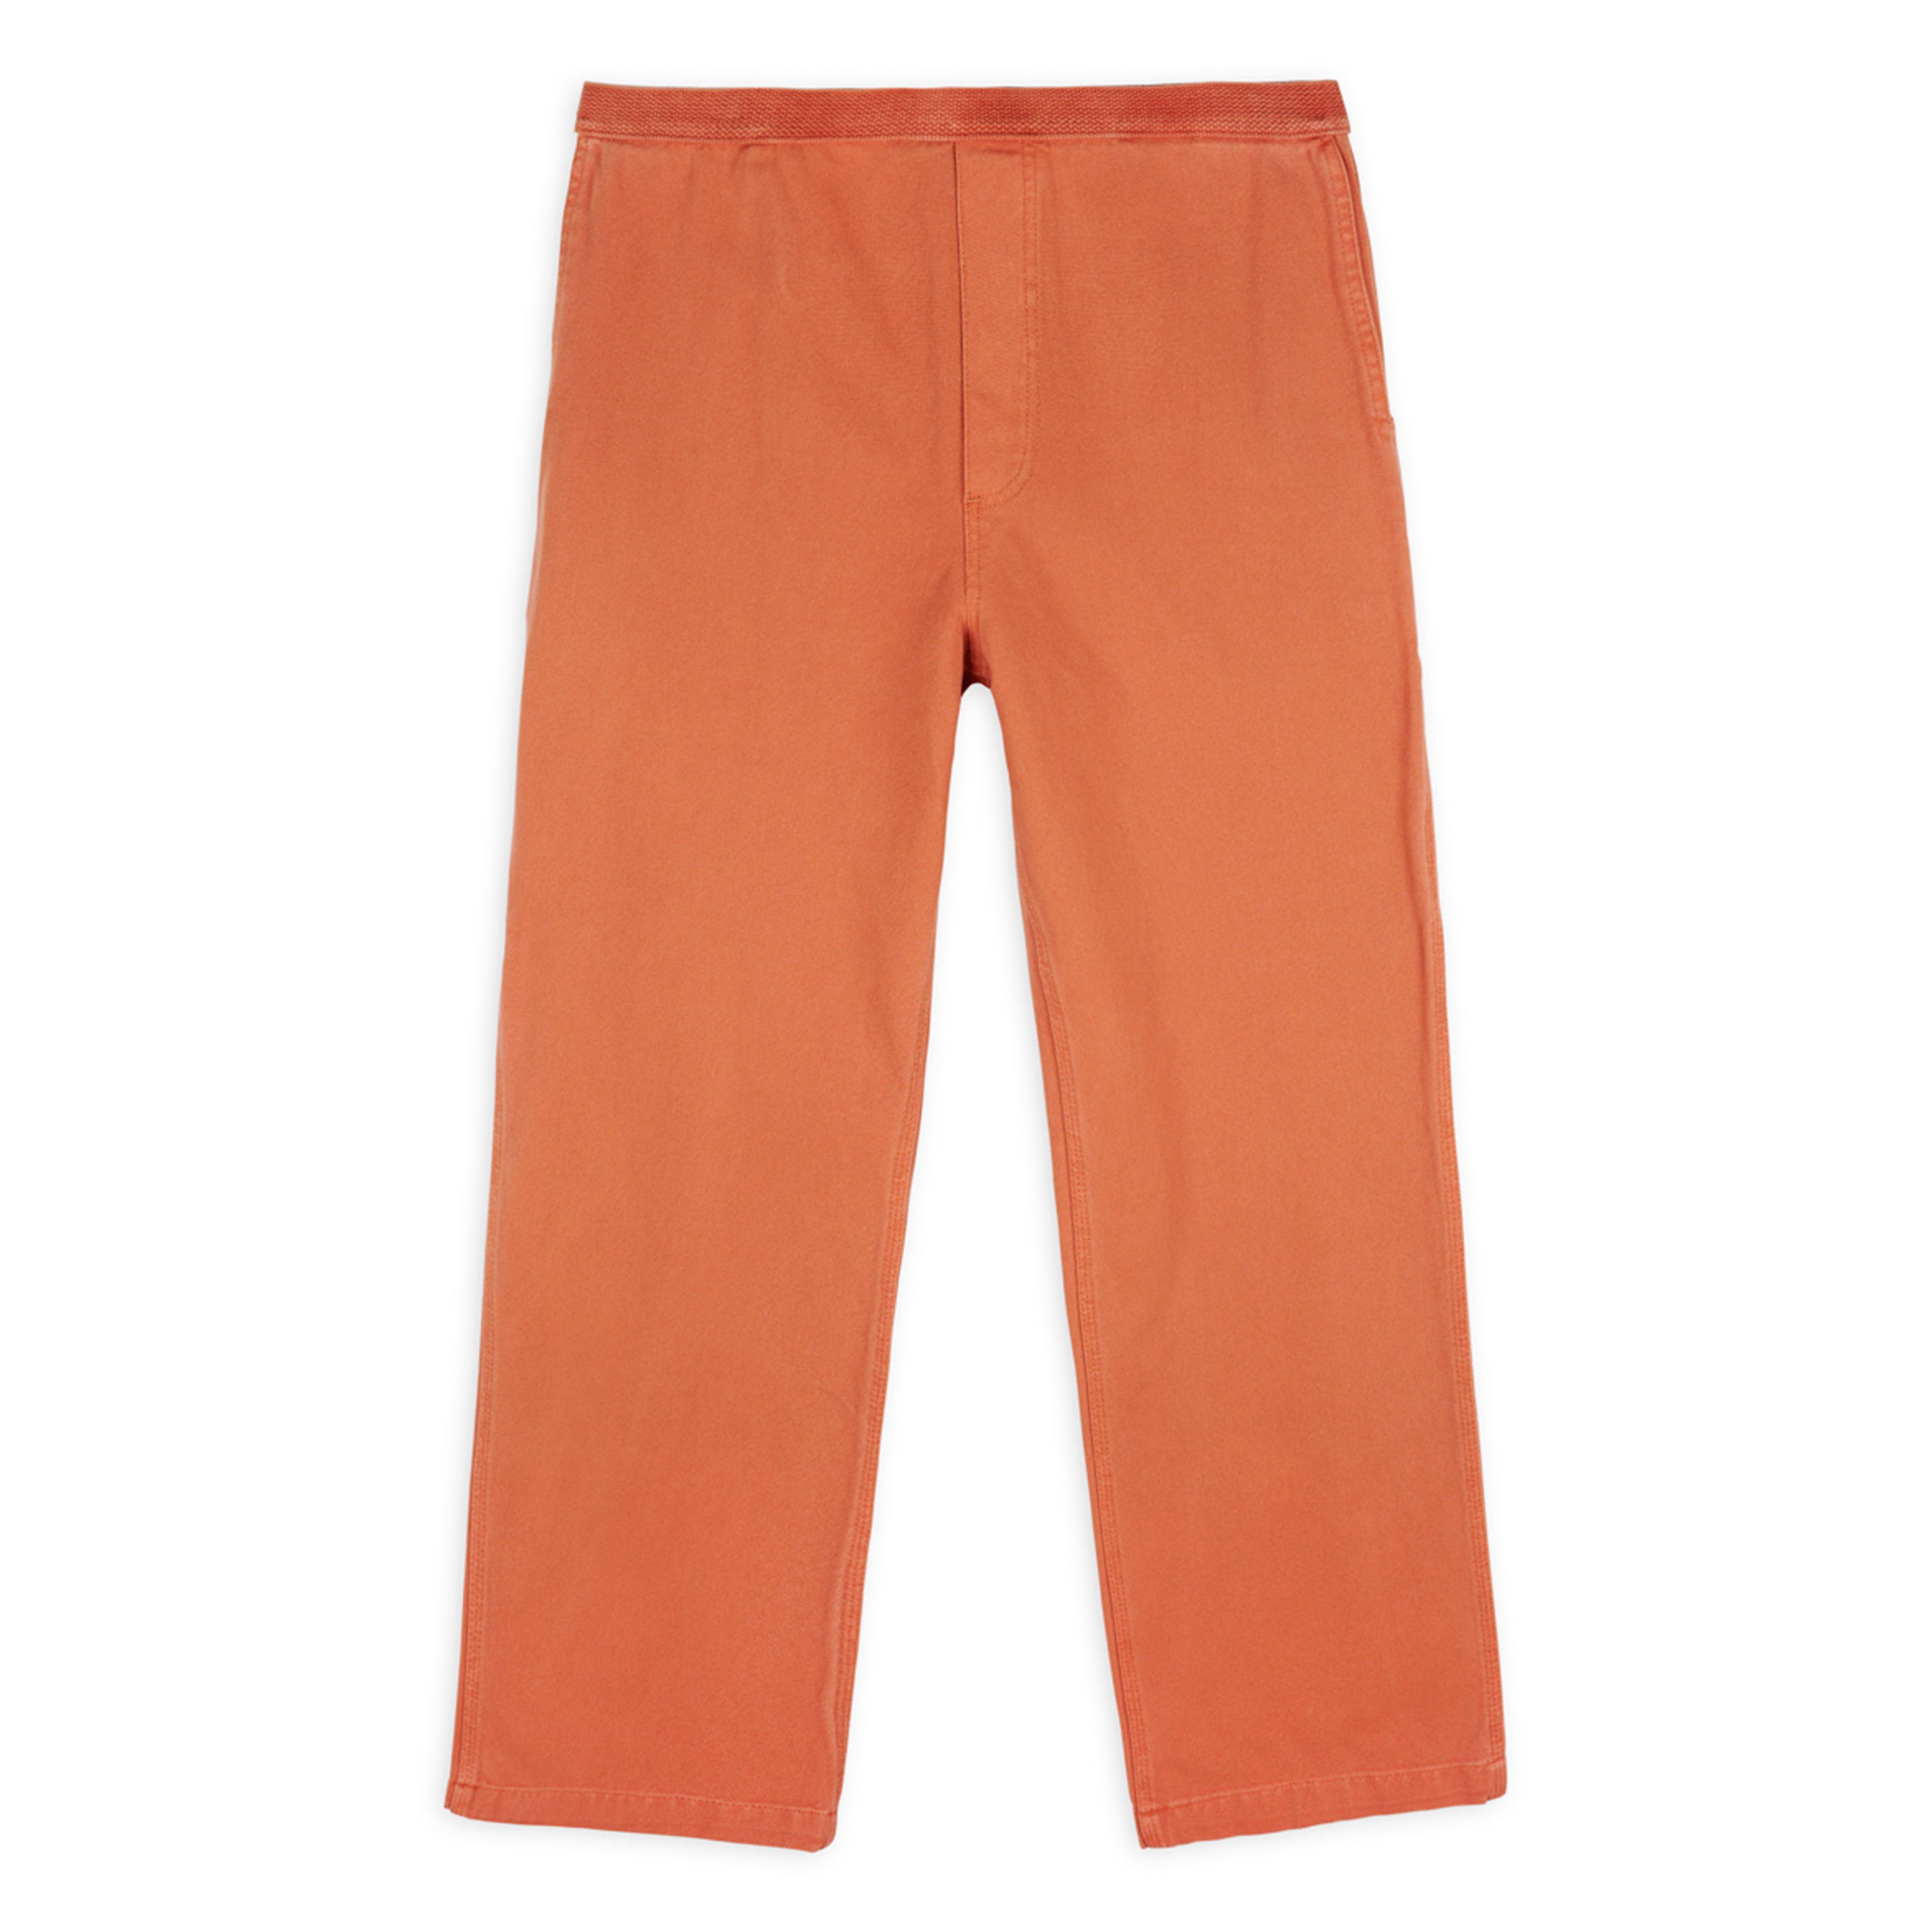 Daily Carpenter Pants - Orange